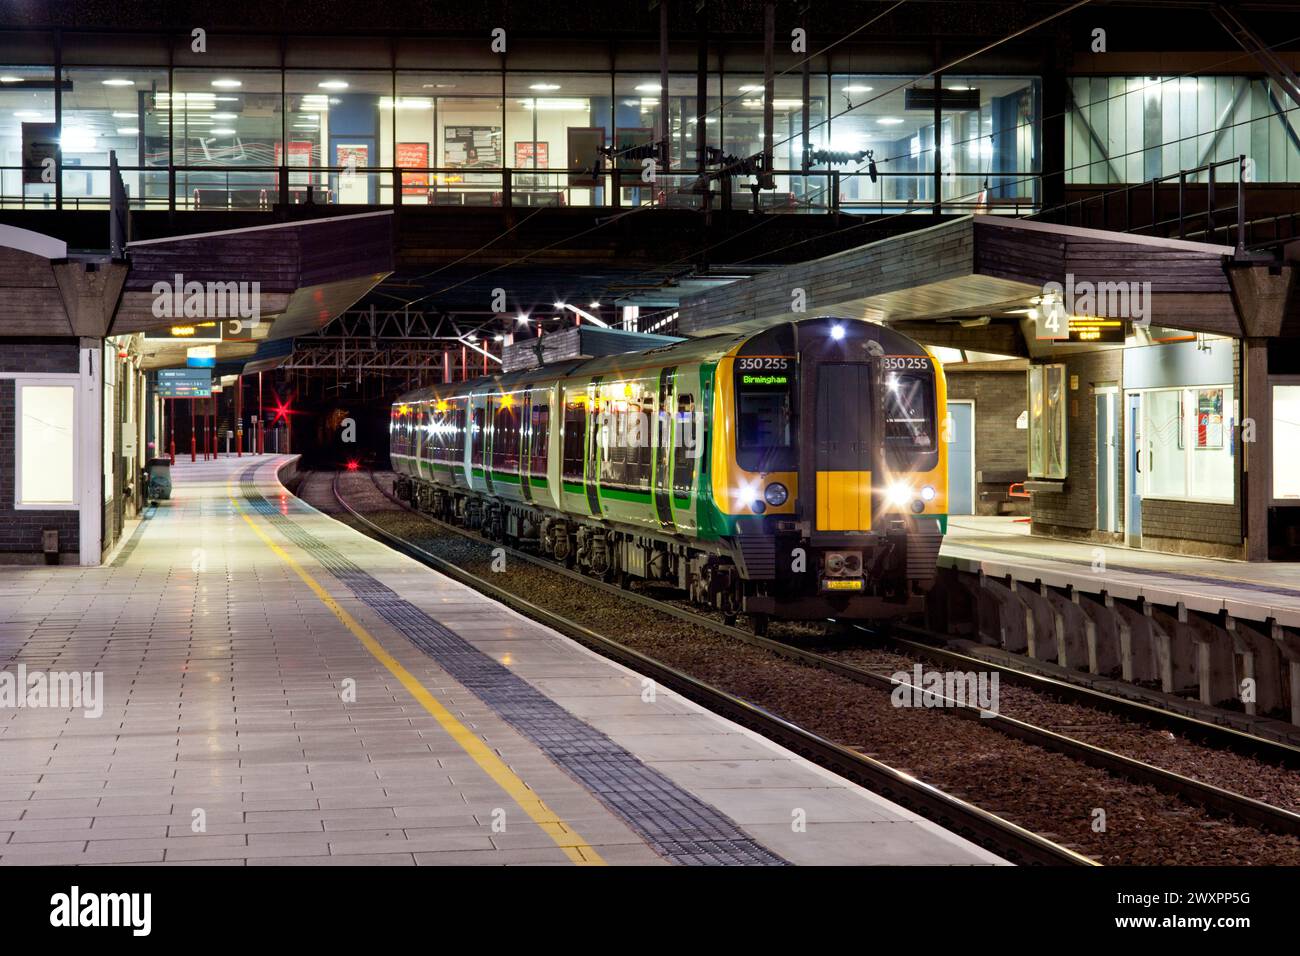 London Midland Siemens Desiro classe 350 treno elettrico a più unità 350255 presso la stazione ferroviaria di Stafford sulla linea principale della costa occidentale di notte Foto Stock